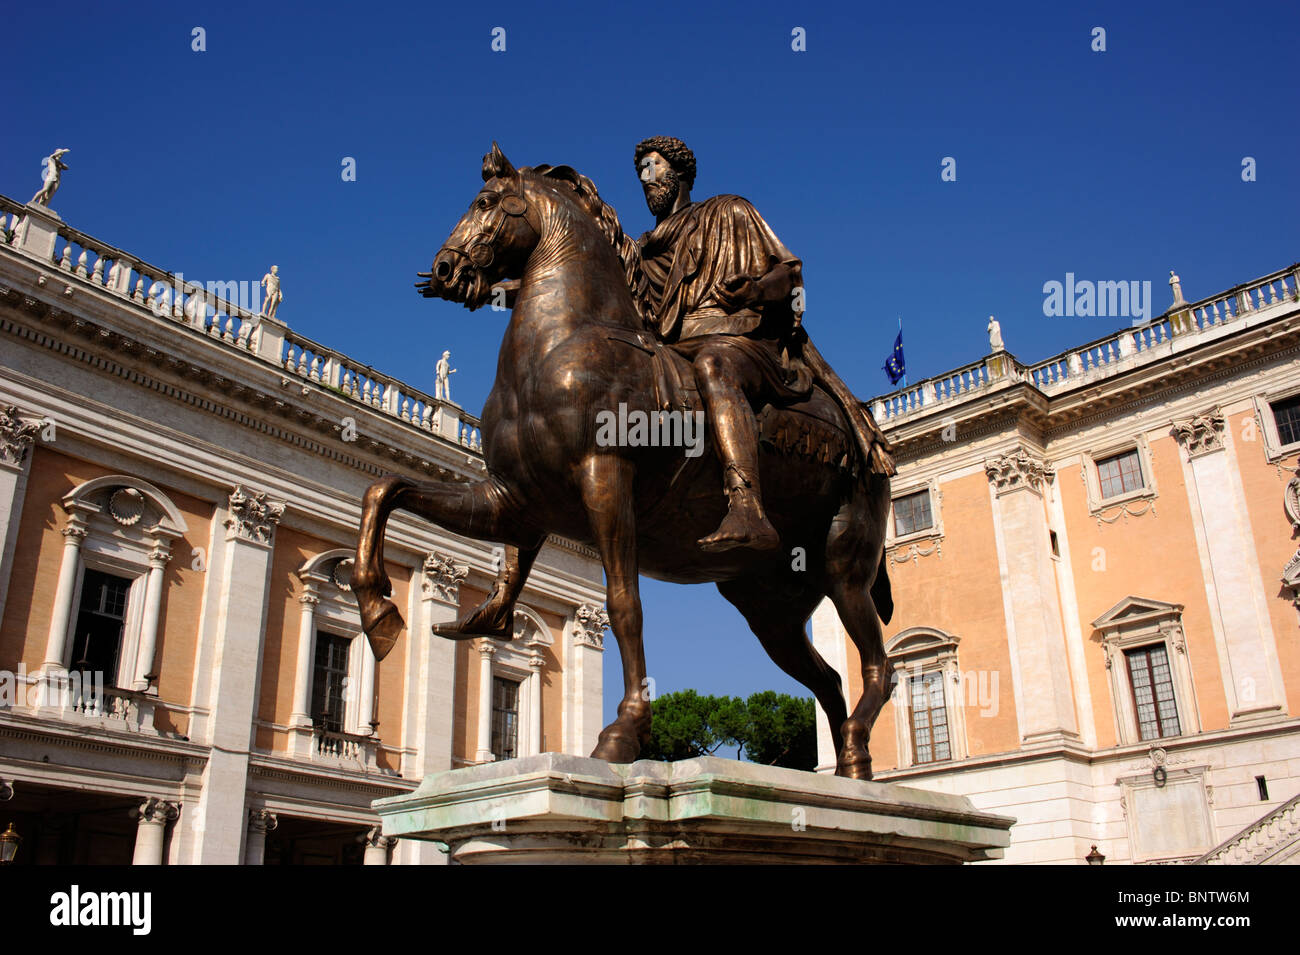 Italy, Rome, Piazza del Campidoglio, statue of Marcus Aurelius Stock Photo